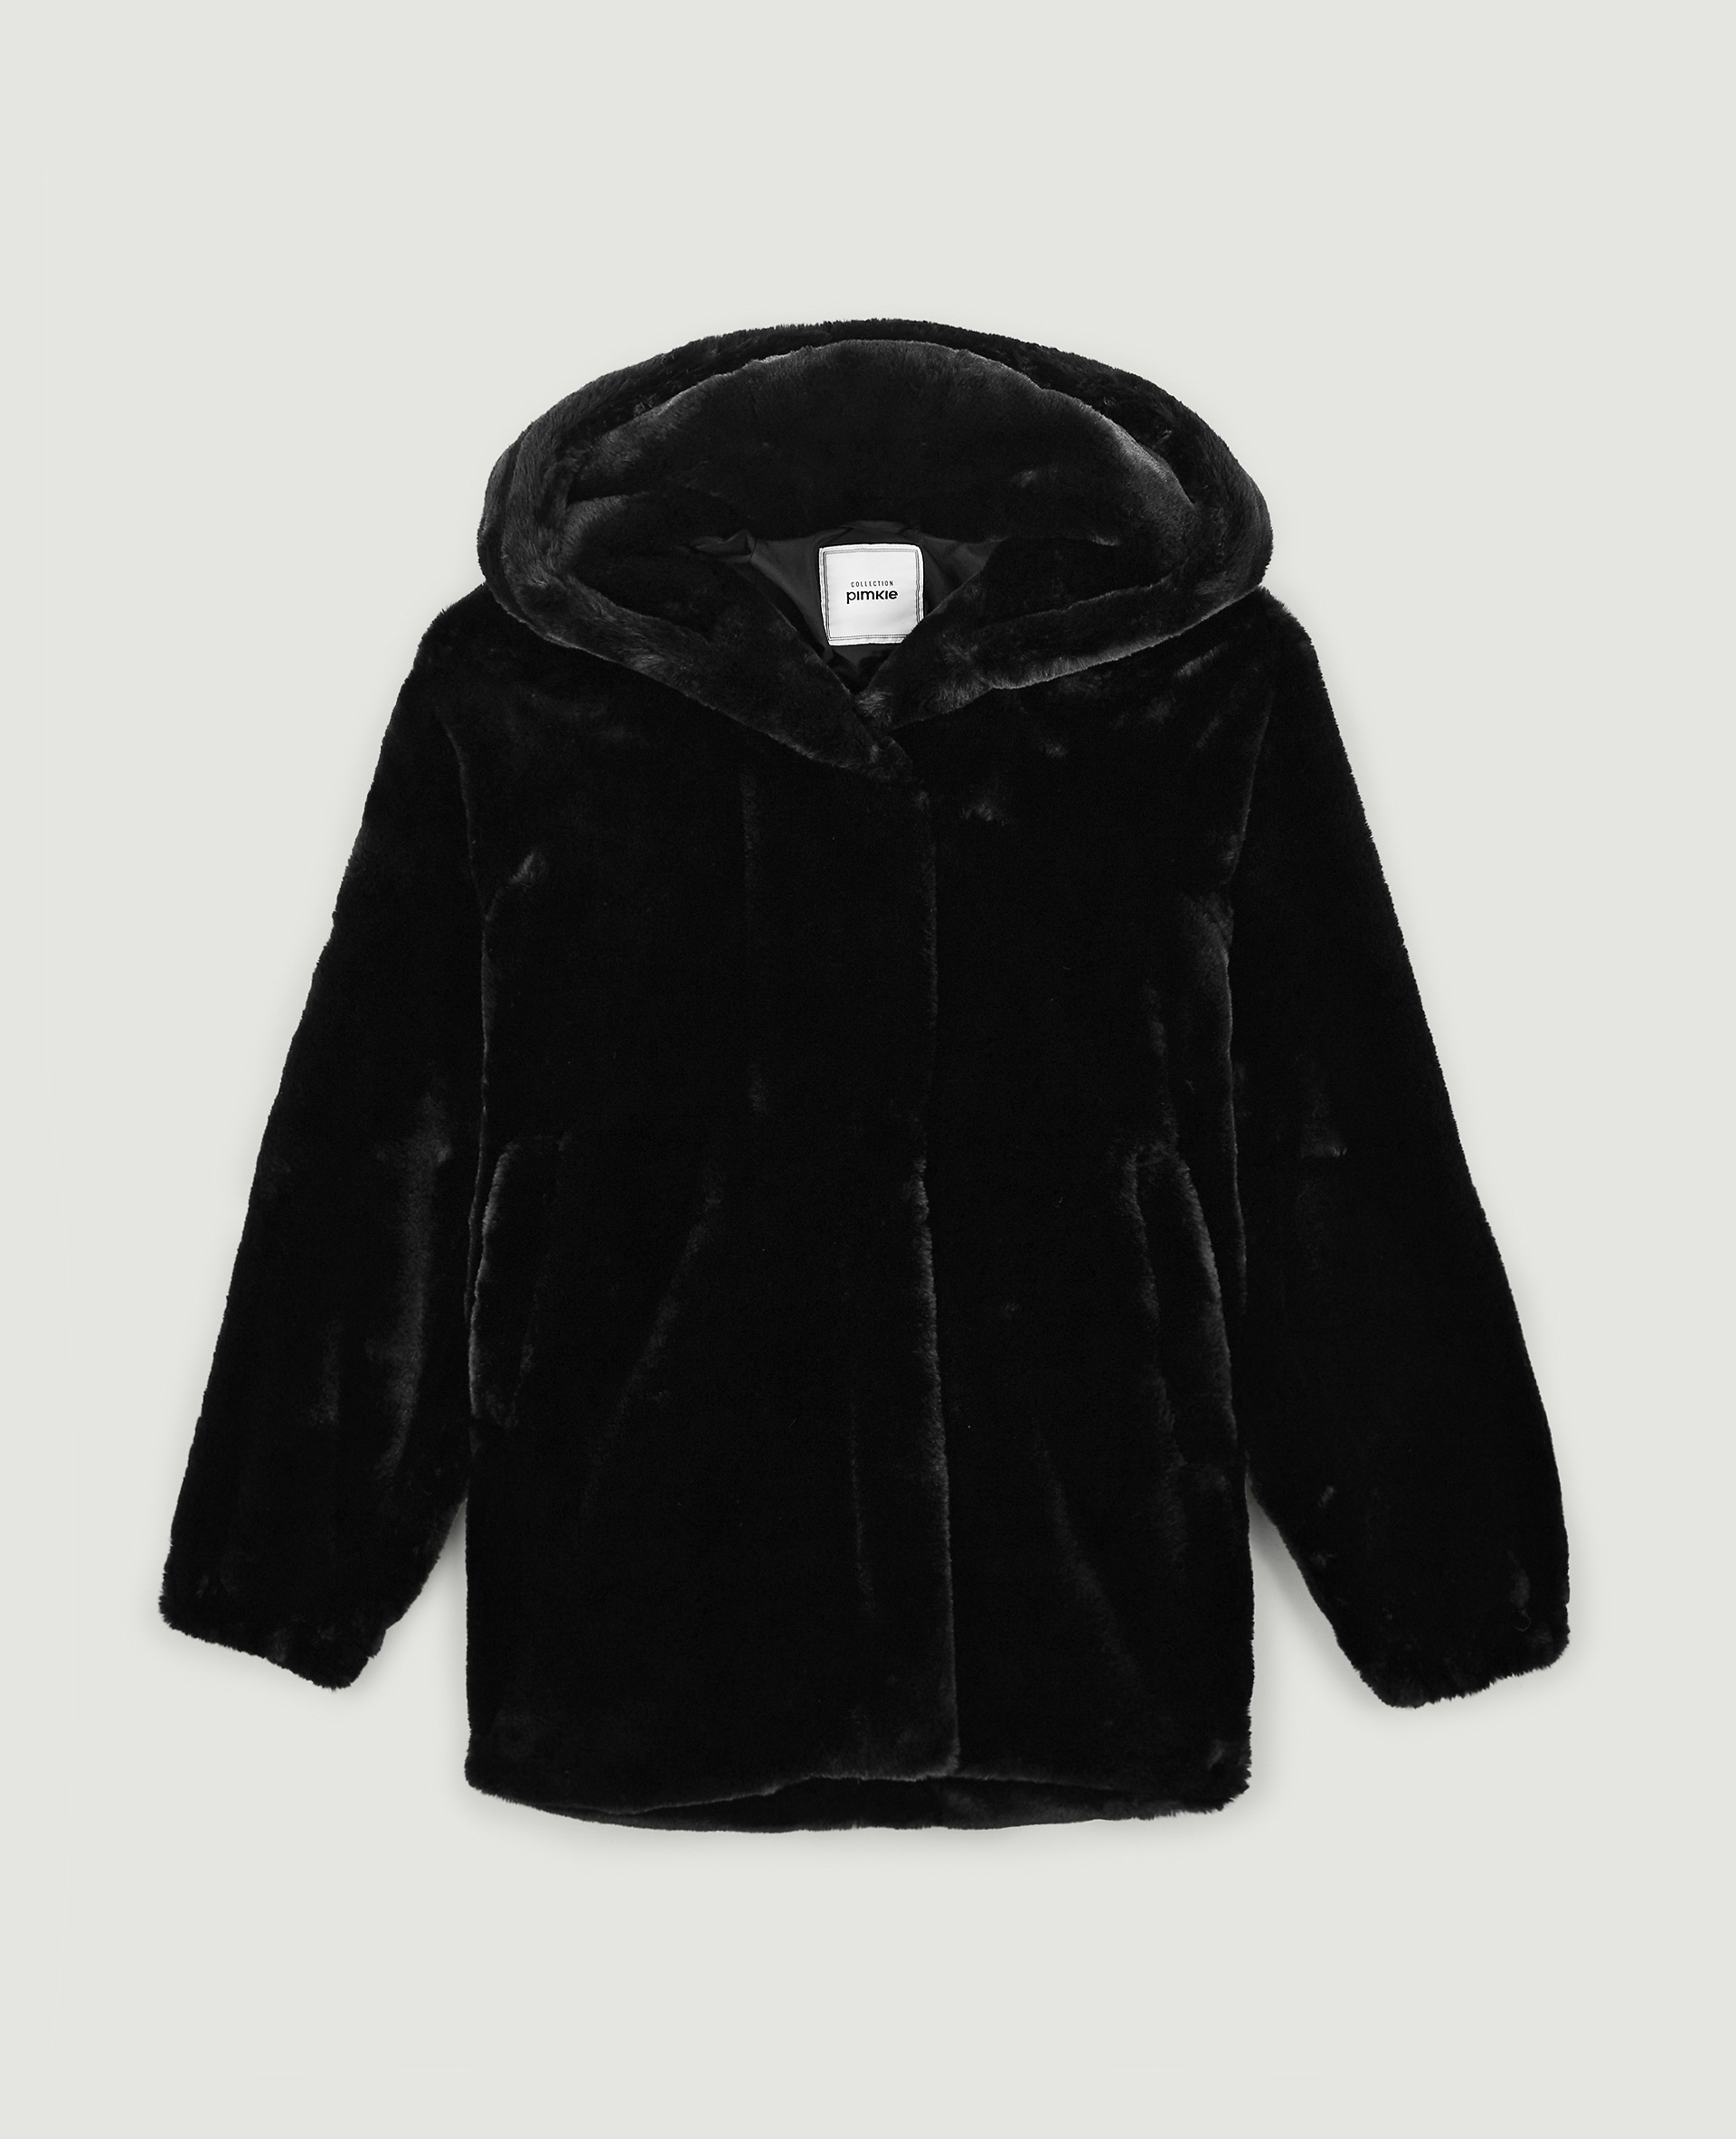 Manteau fausse fourrure avec capuche noir - Pimkie